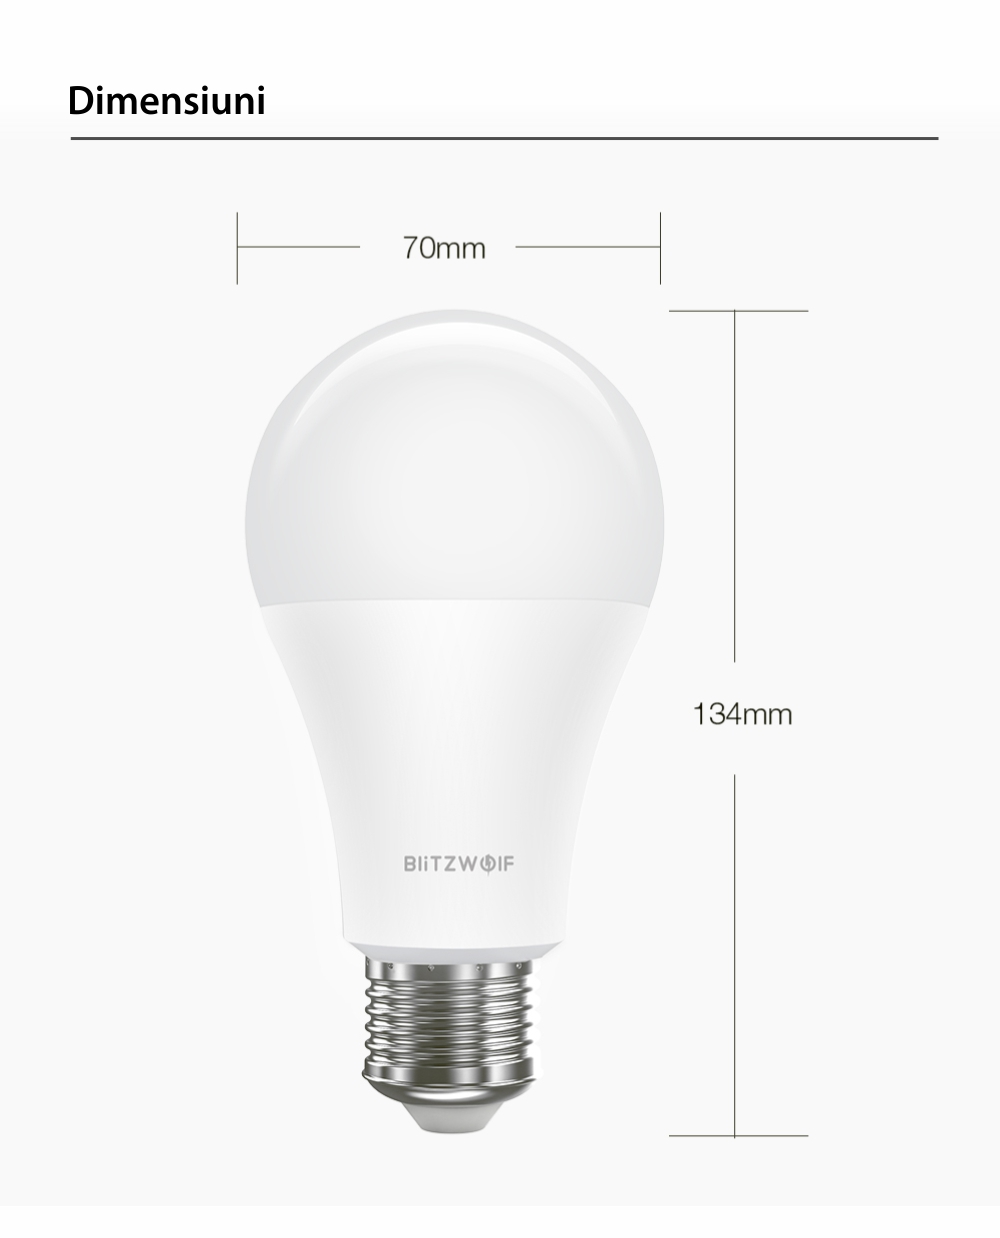 Bec Smart LED RGB, BlitzWolf BW-LT21, 10 W, Bulb, 900 LM, 3000K, E27, Comanda vocala